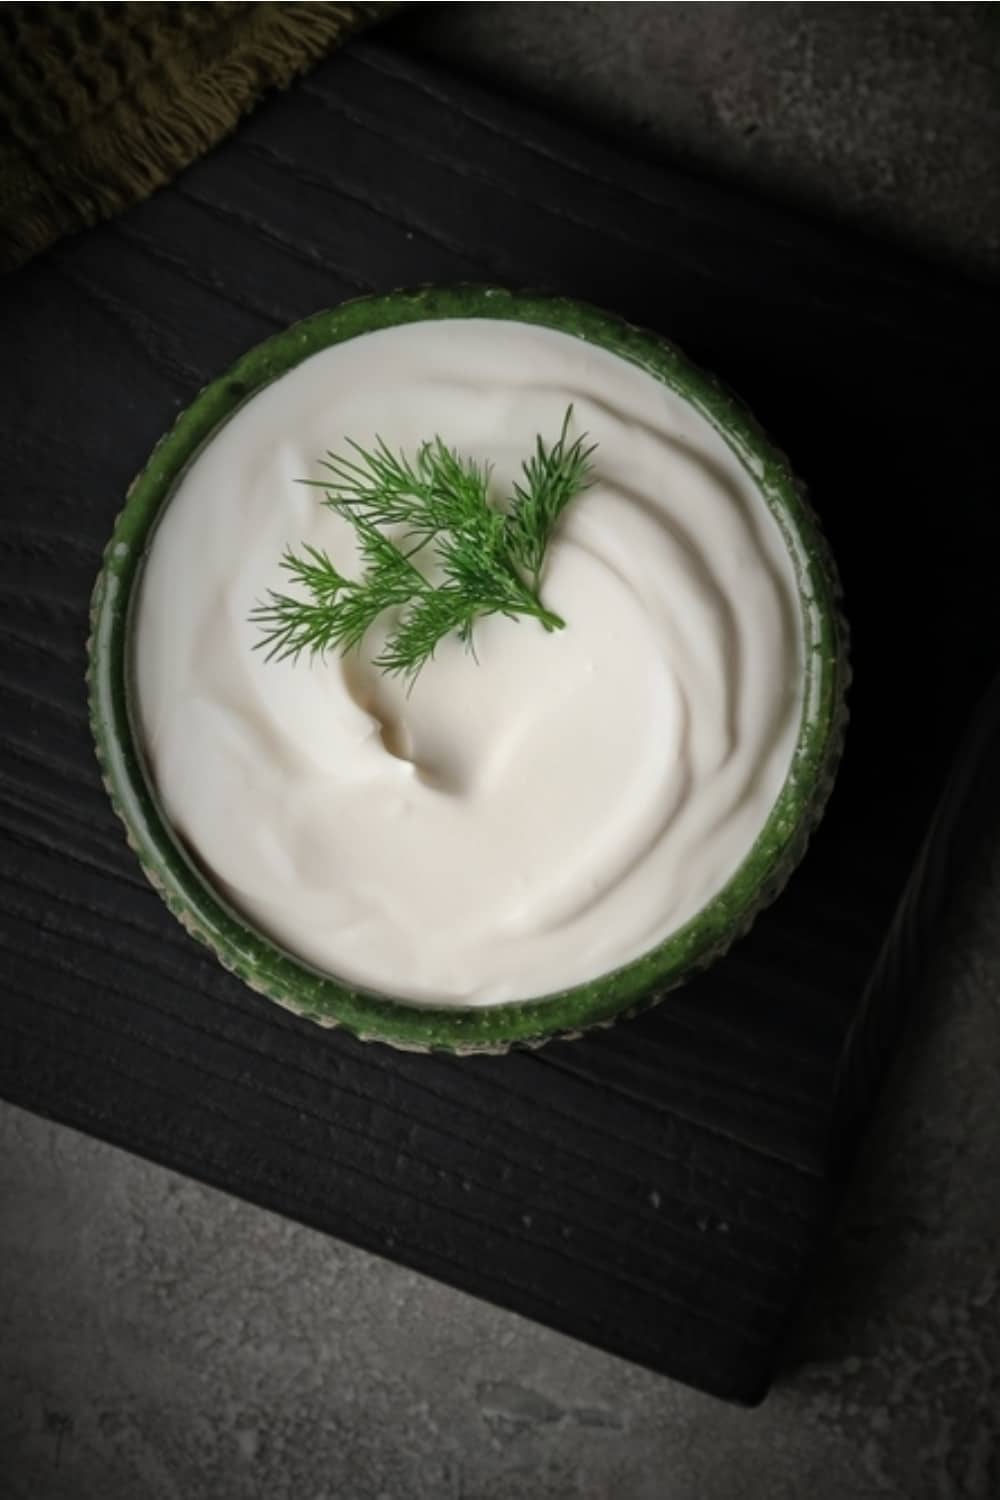 Sour Cream in einer grünen Schale auf dem Tisch